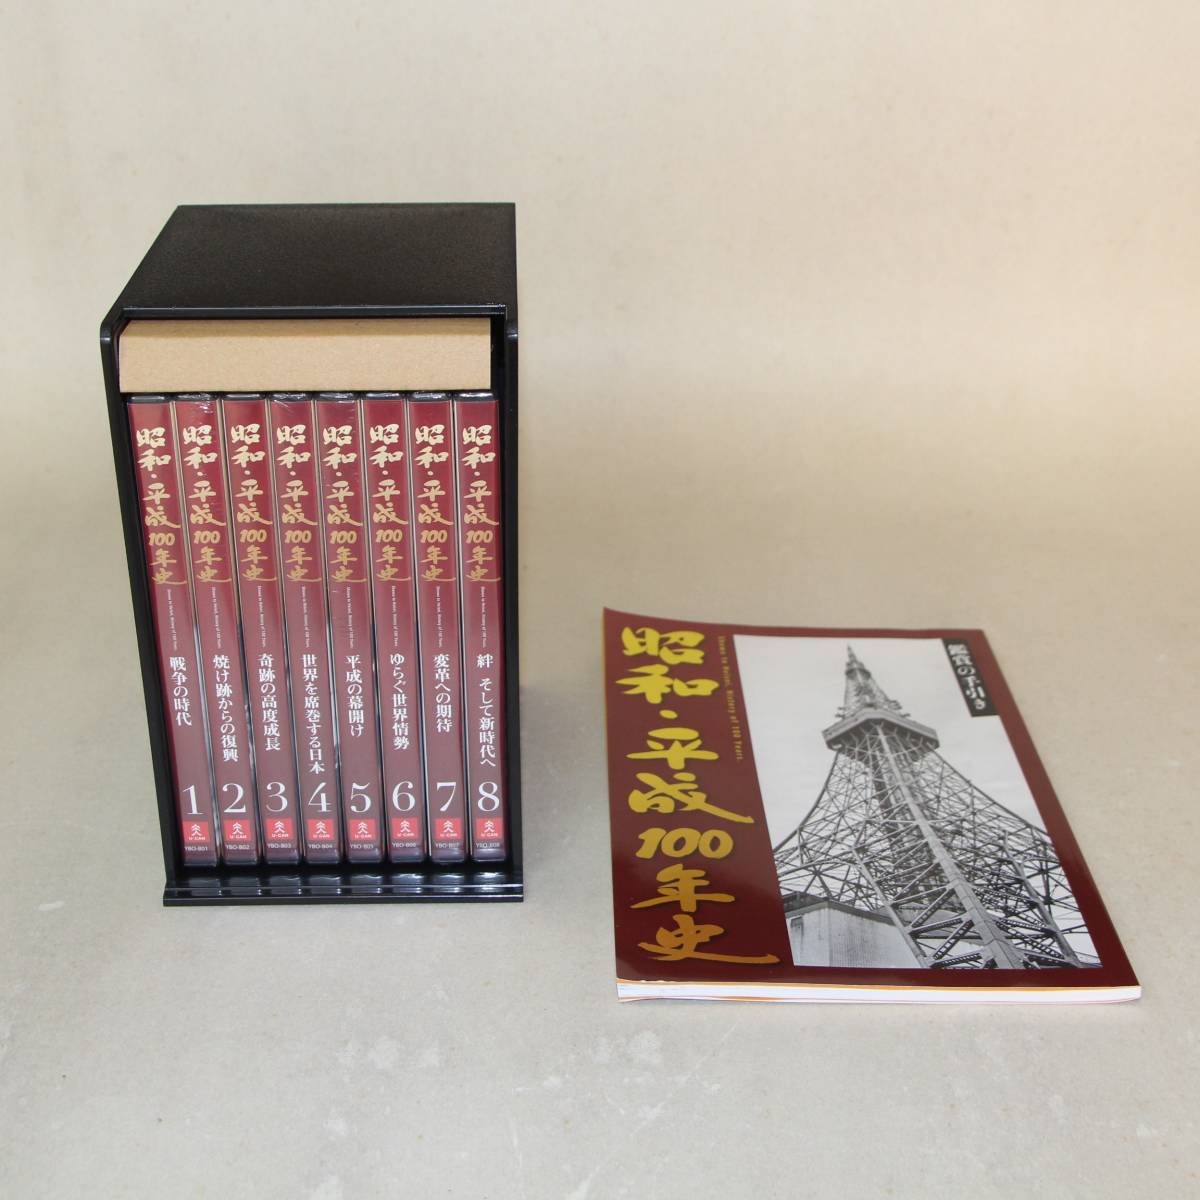 内祝い】 △▽ 昭和・平成100年史 △▽ ユーキャン DVD全8巻 歴史